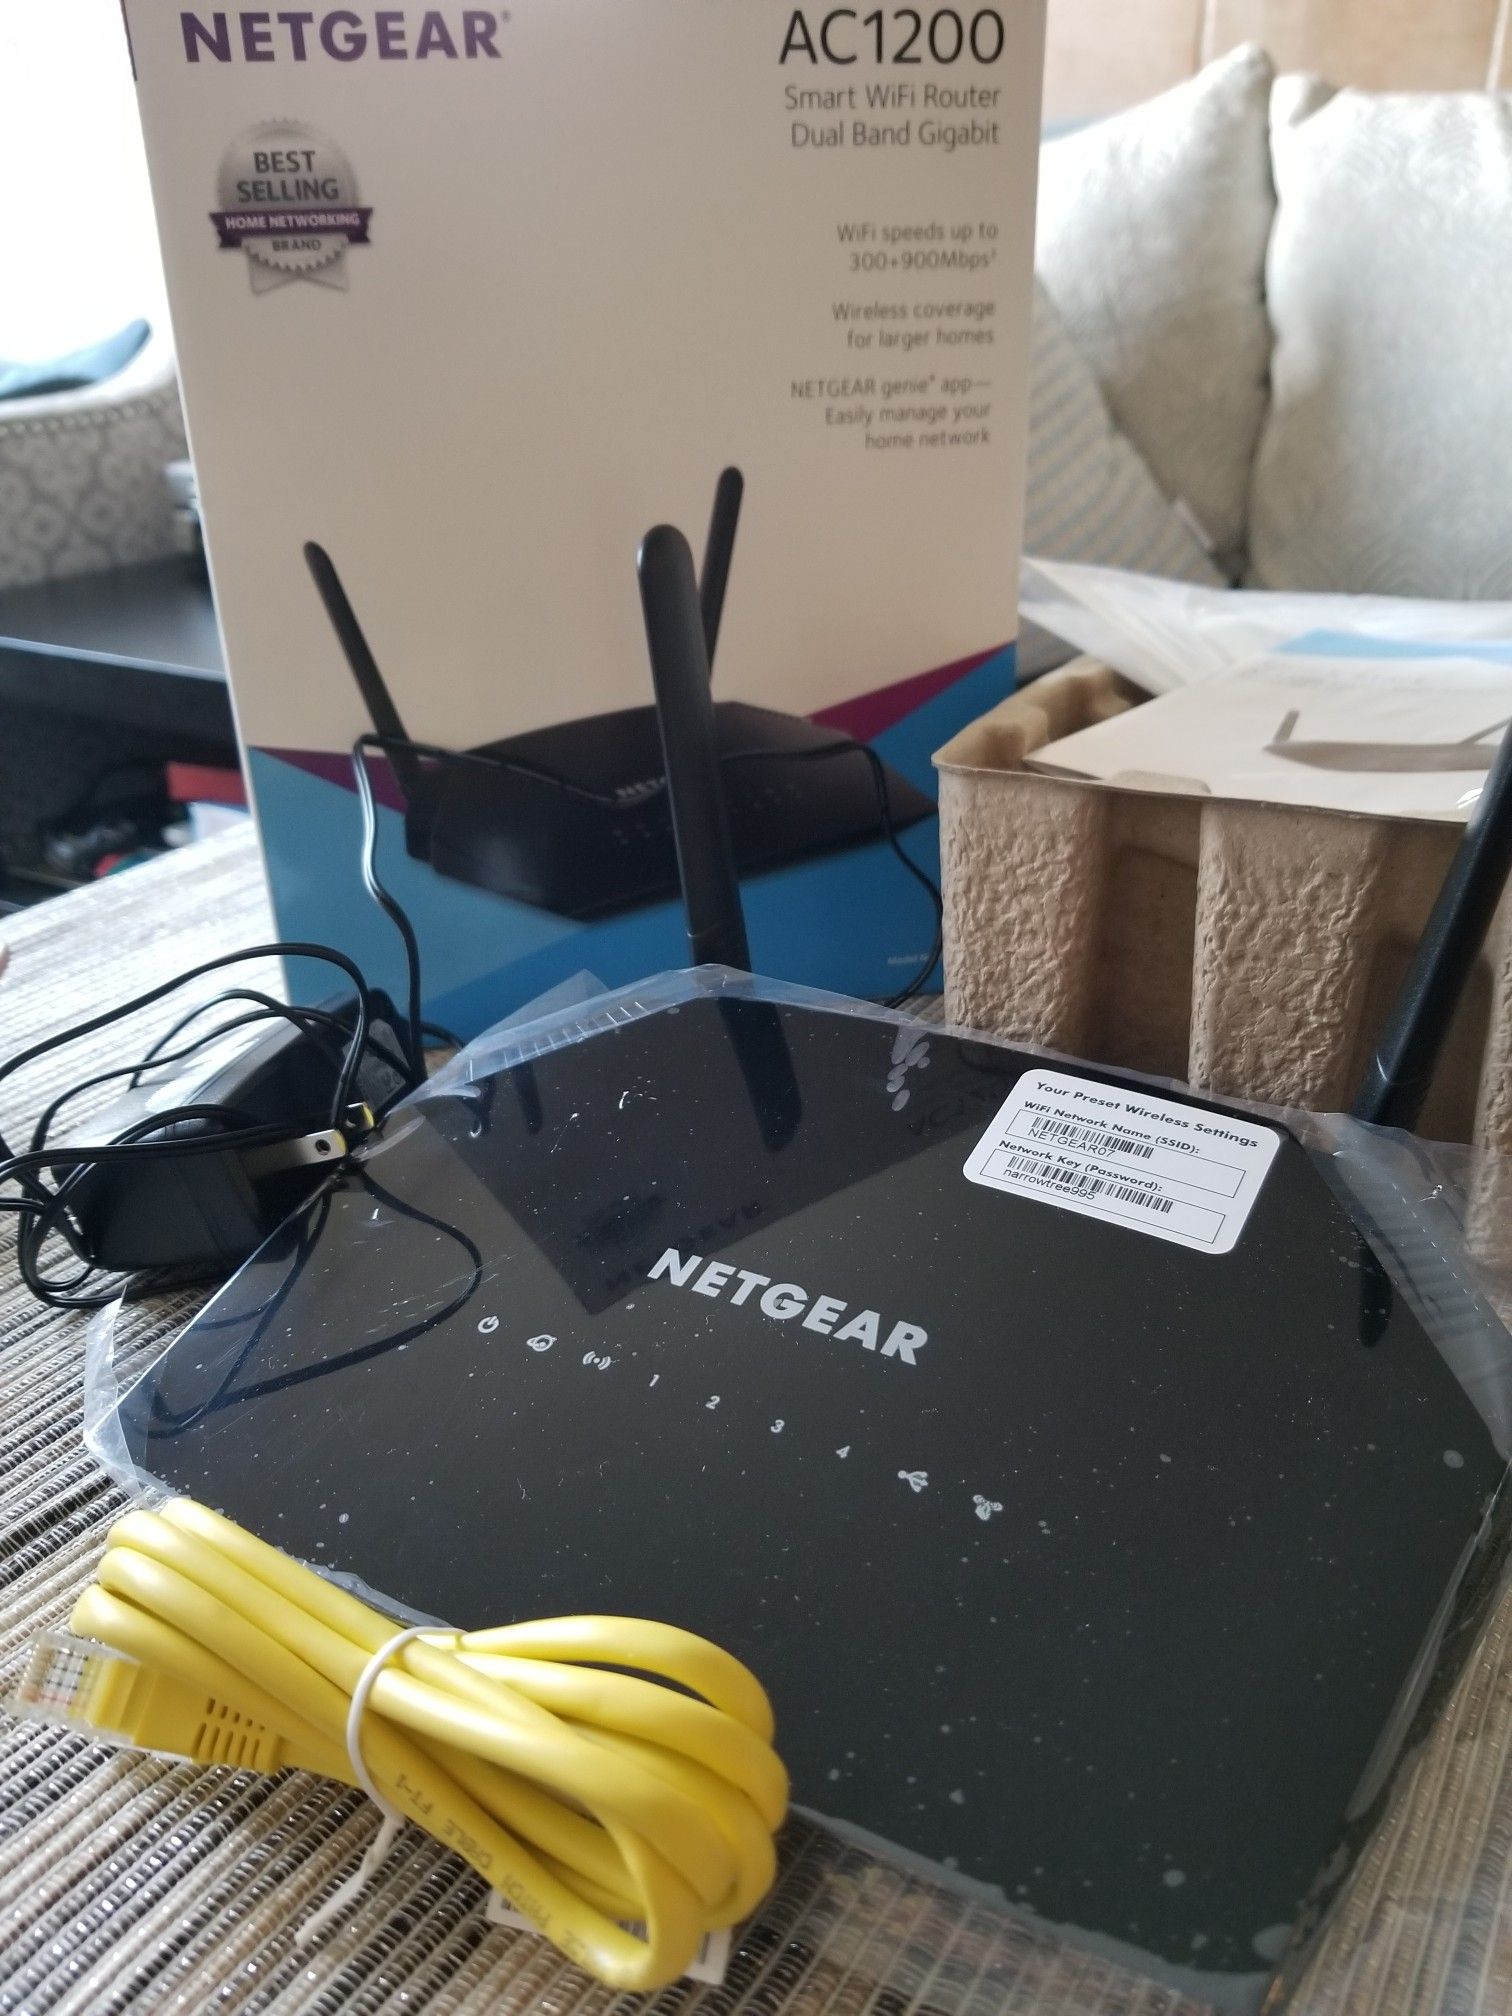 Smart WiFi Router Netgear